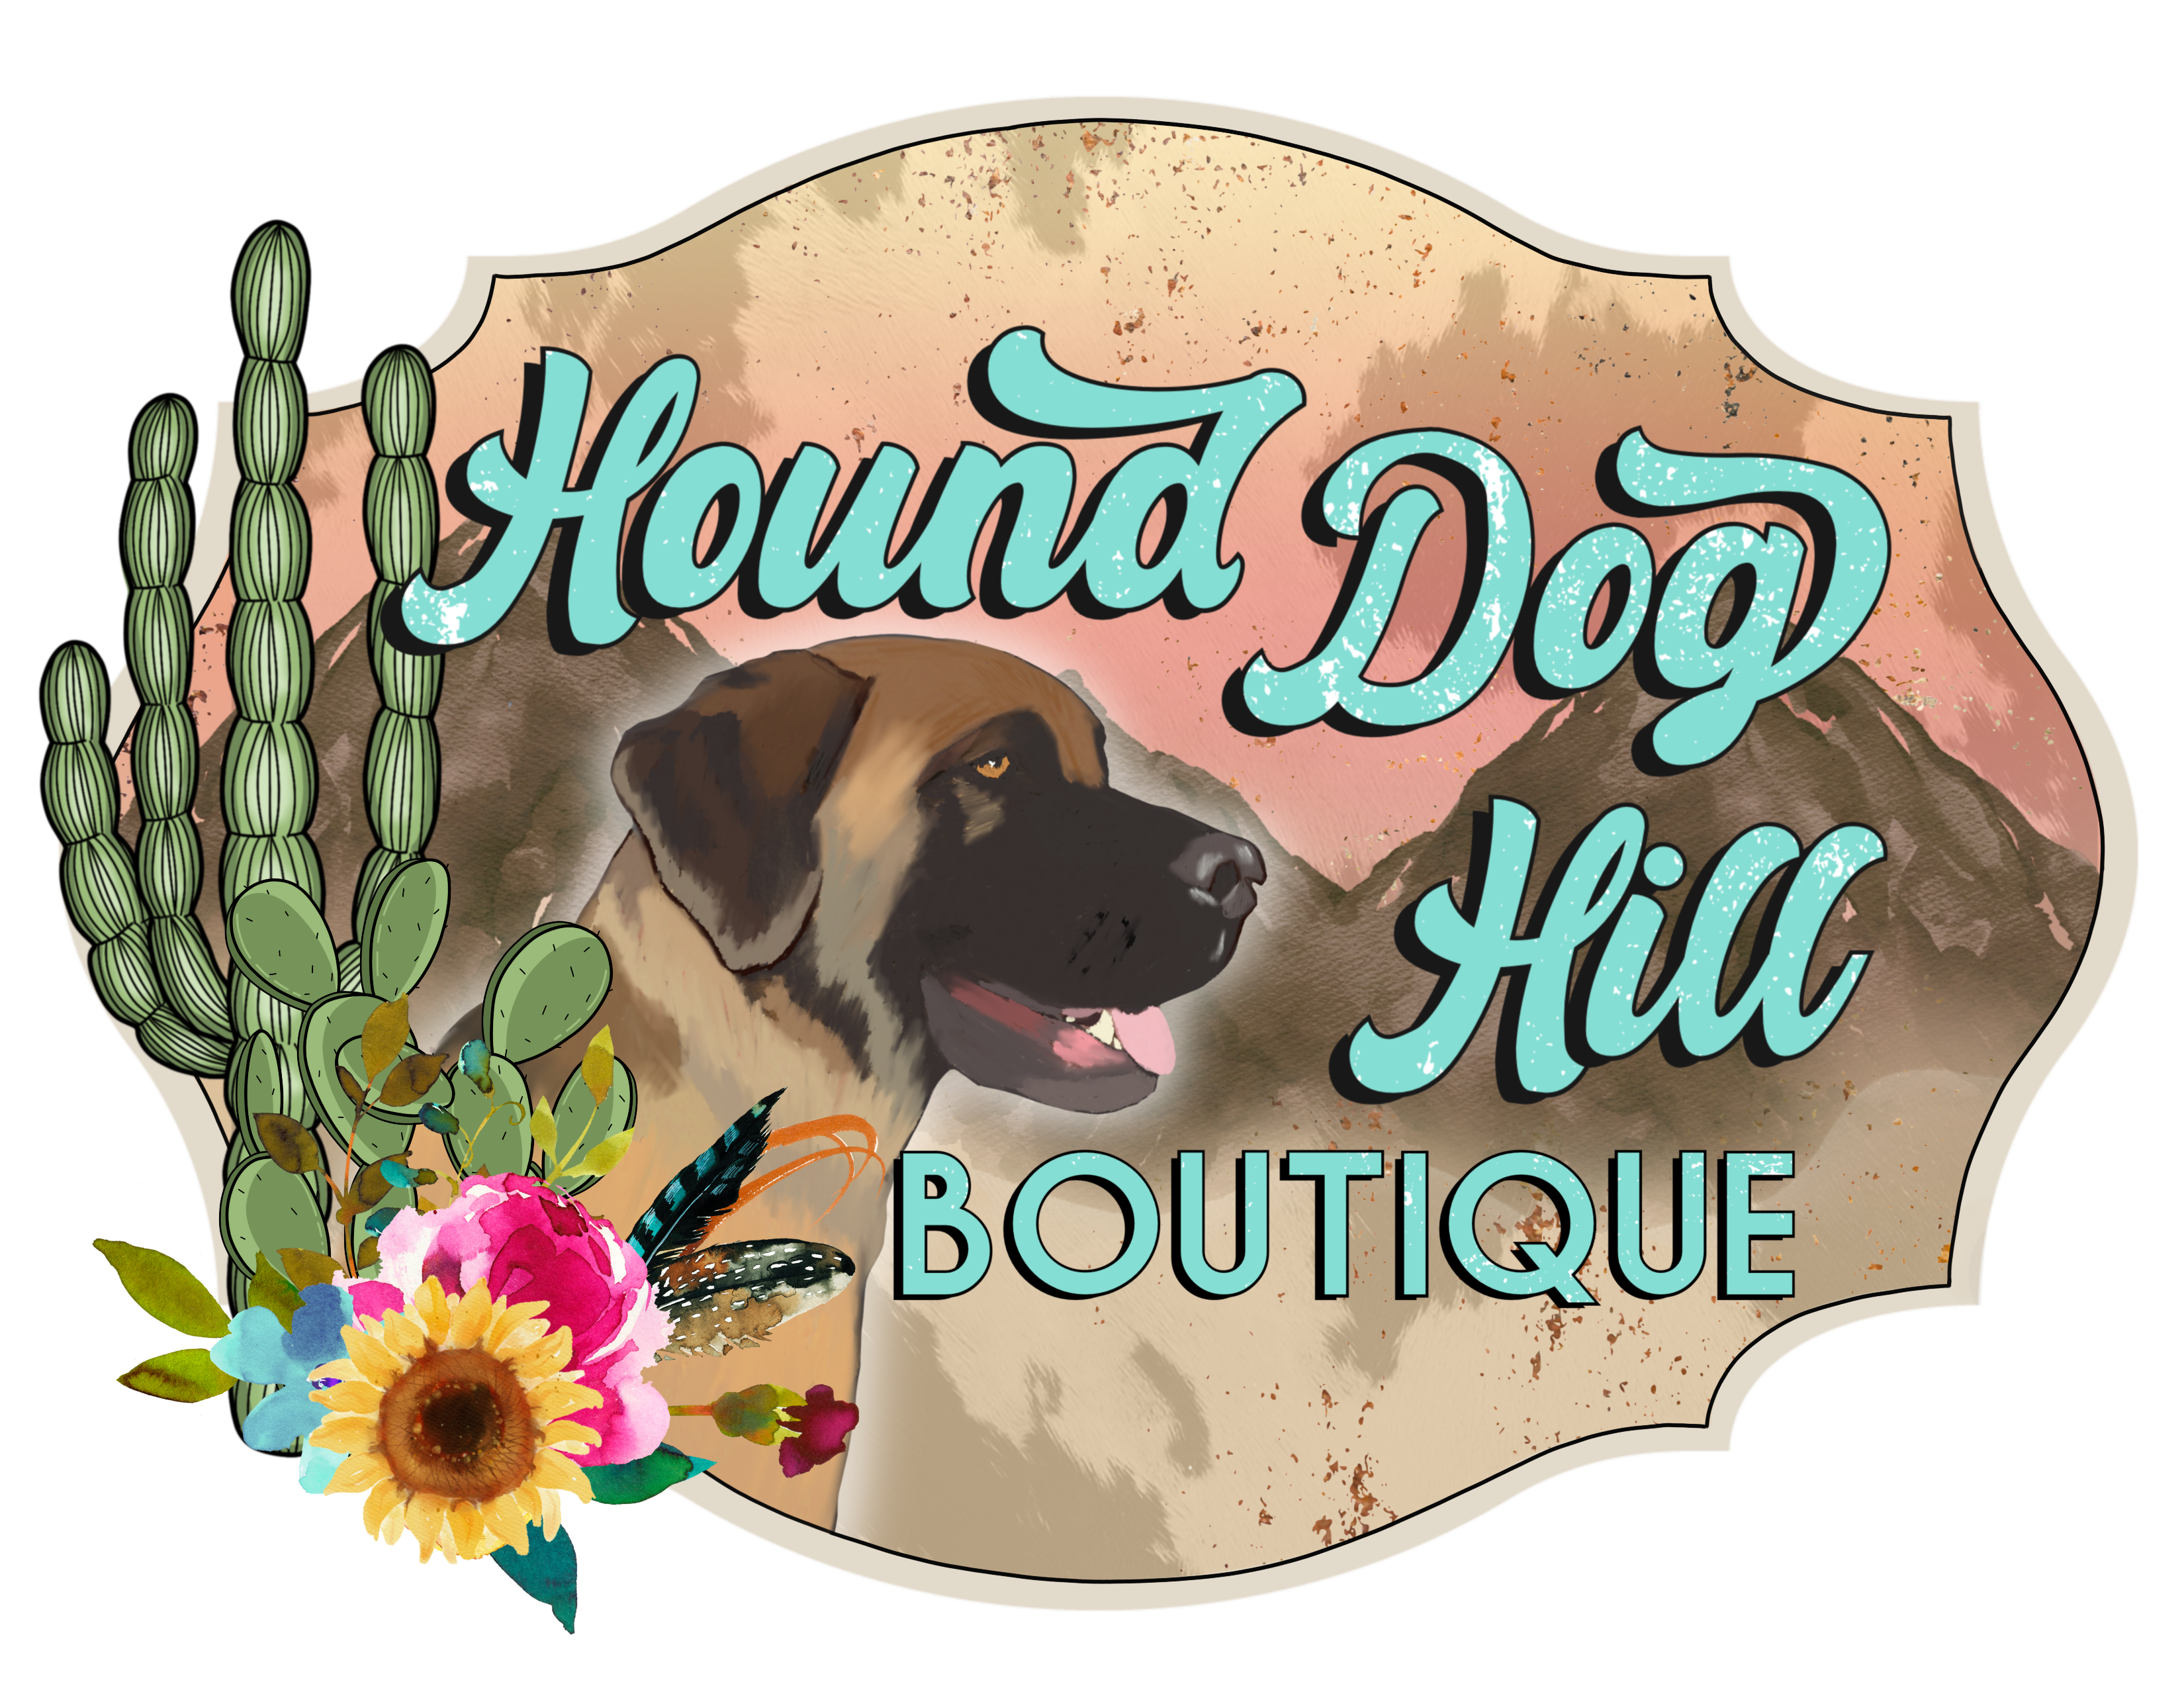 Hound Dog Hill Boutique